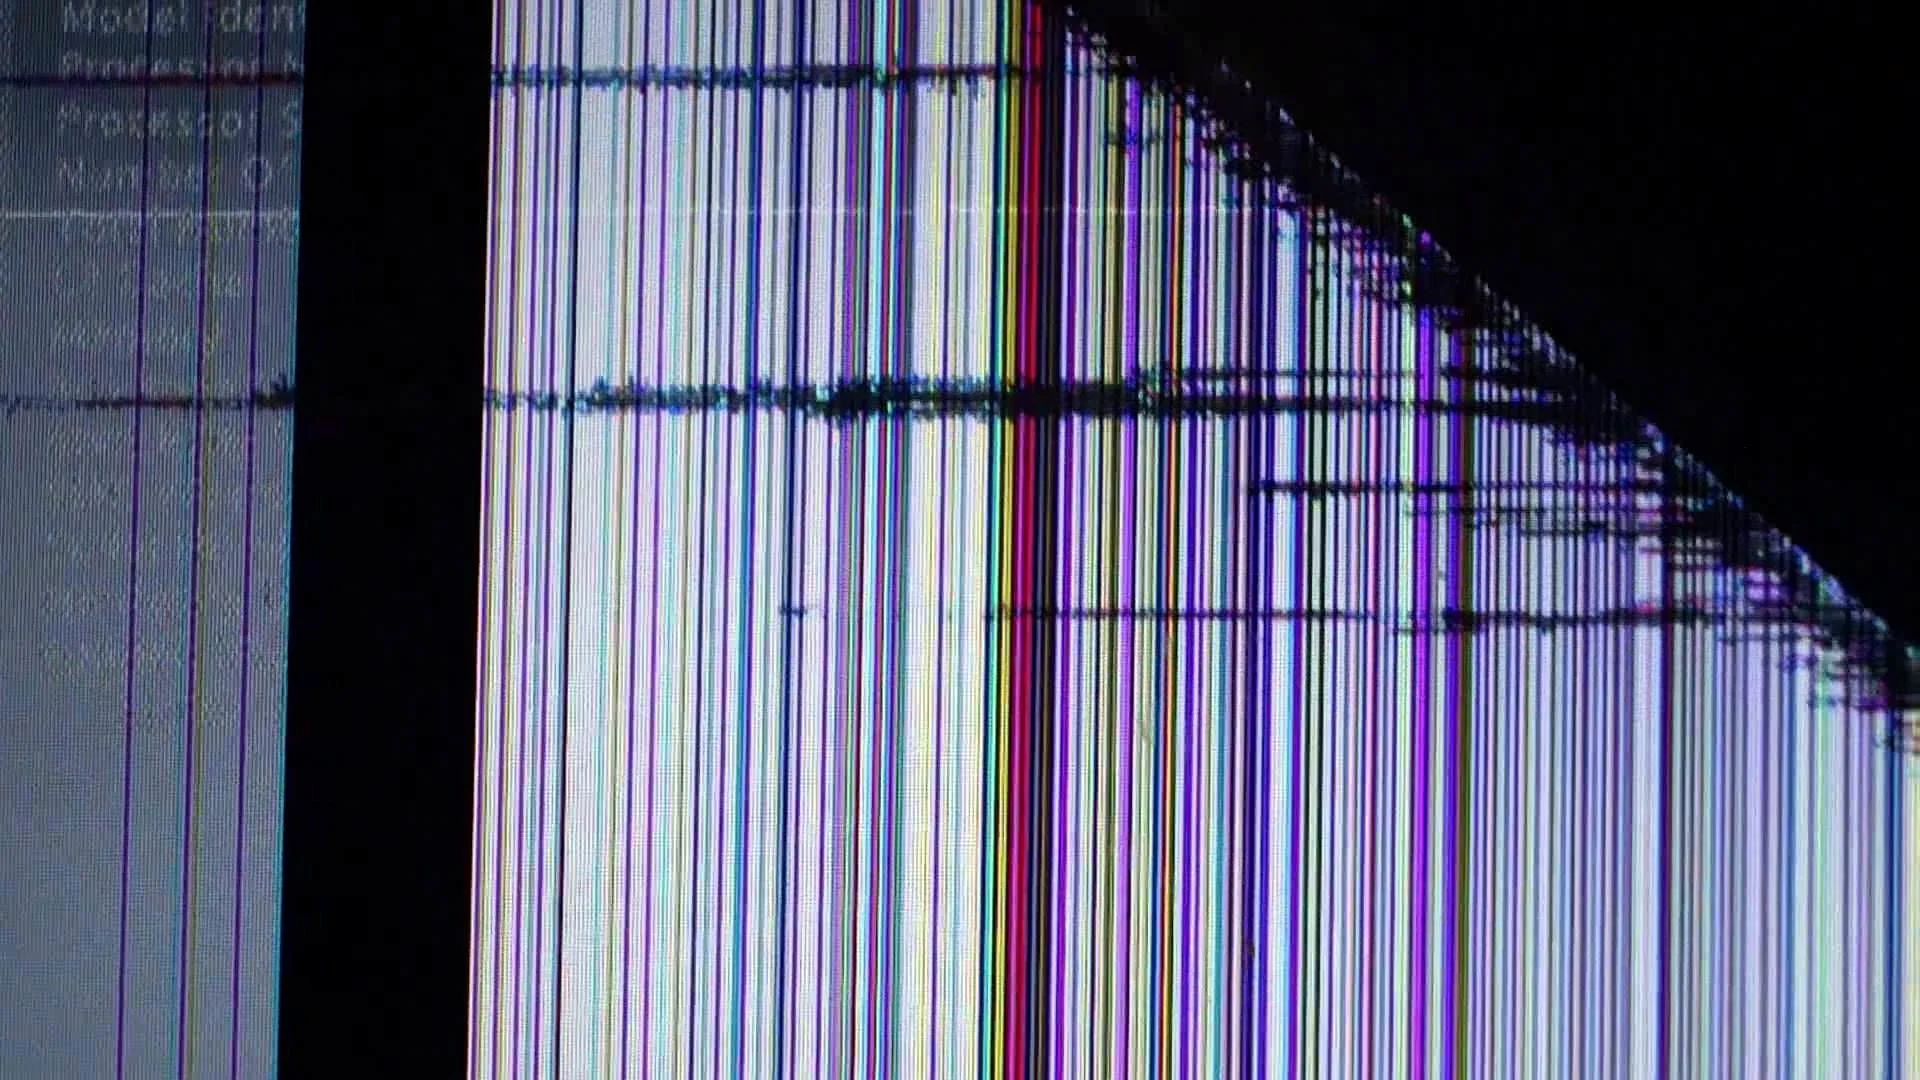 Горизонтальные линии на экране. Сломанный экран. Разноцветные полосы. Разбитый монитор. Разбитая матрица.